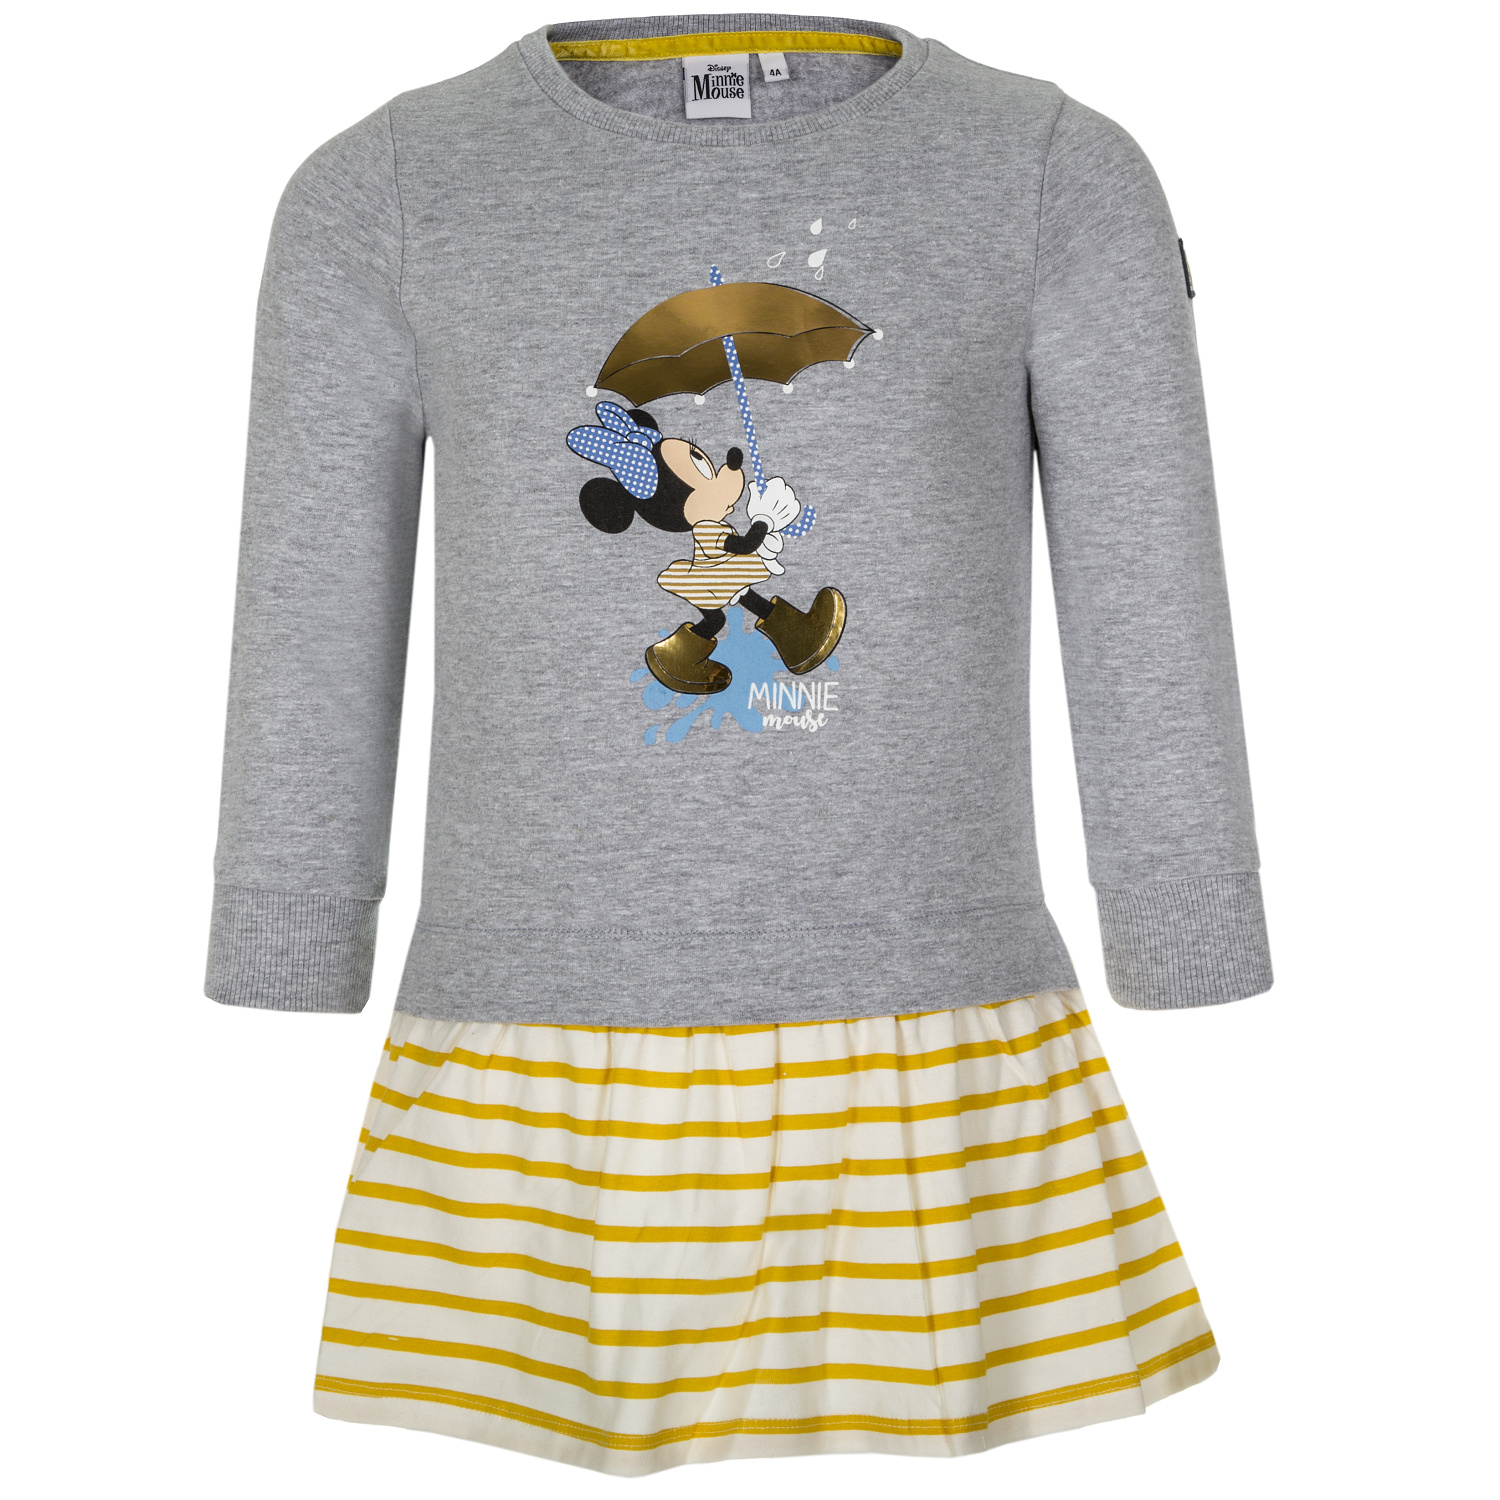 Minnie Mouse - licence Dívčí šaty - Minnie Mouse VH1078, světle šedý melír Barva: Šedá, Velikost: 98